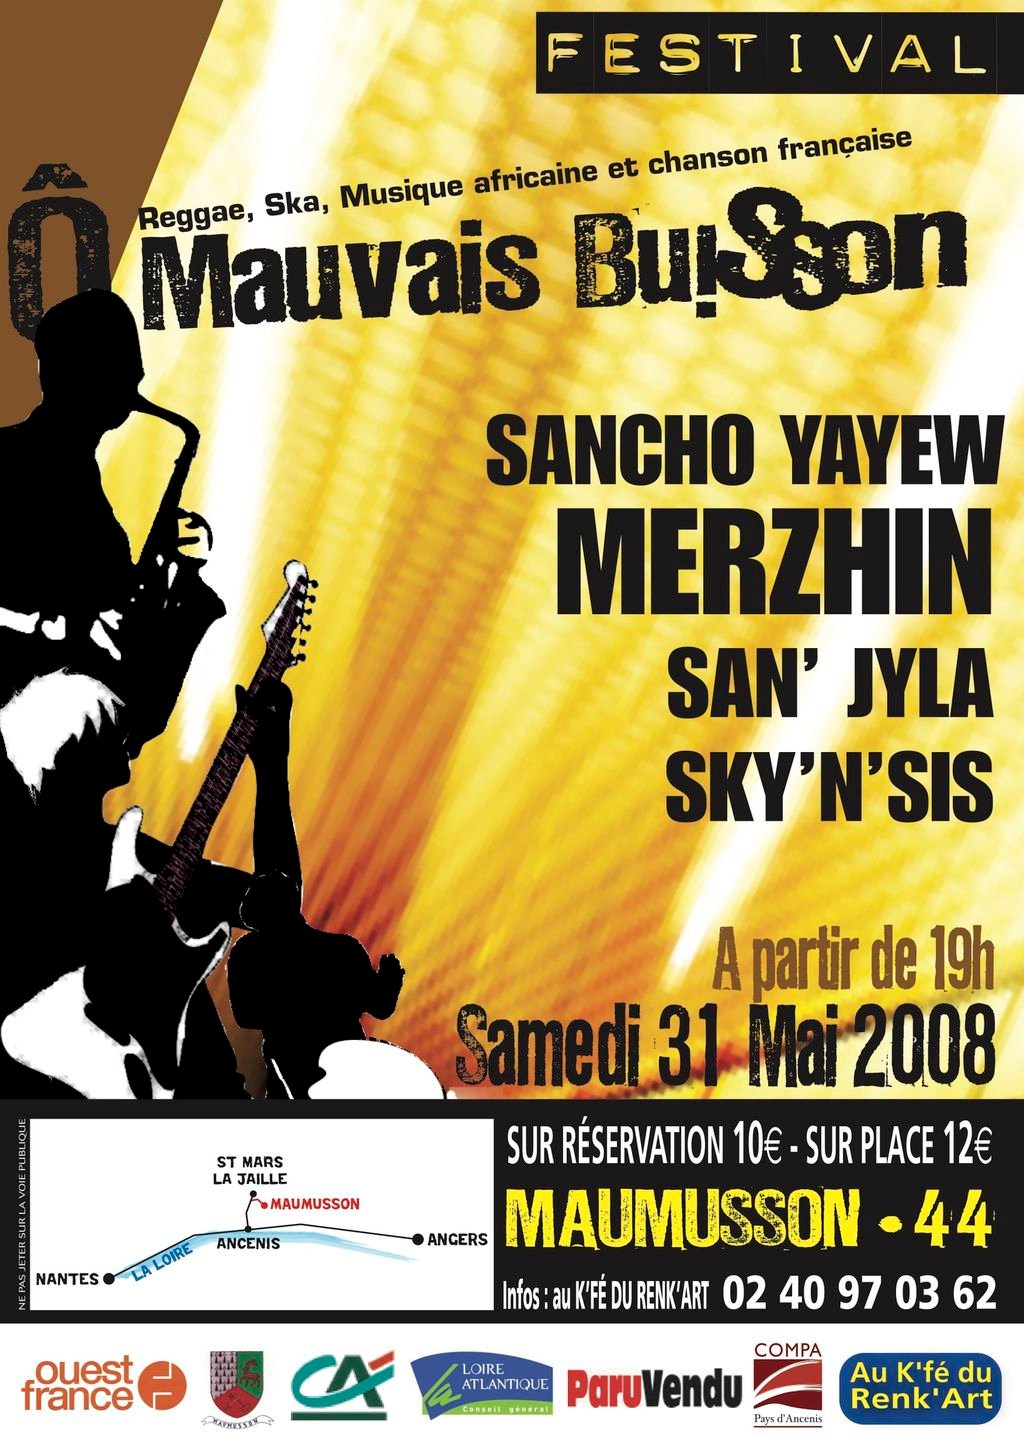 Festival 2008